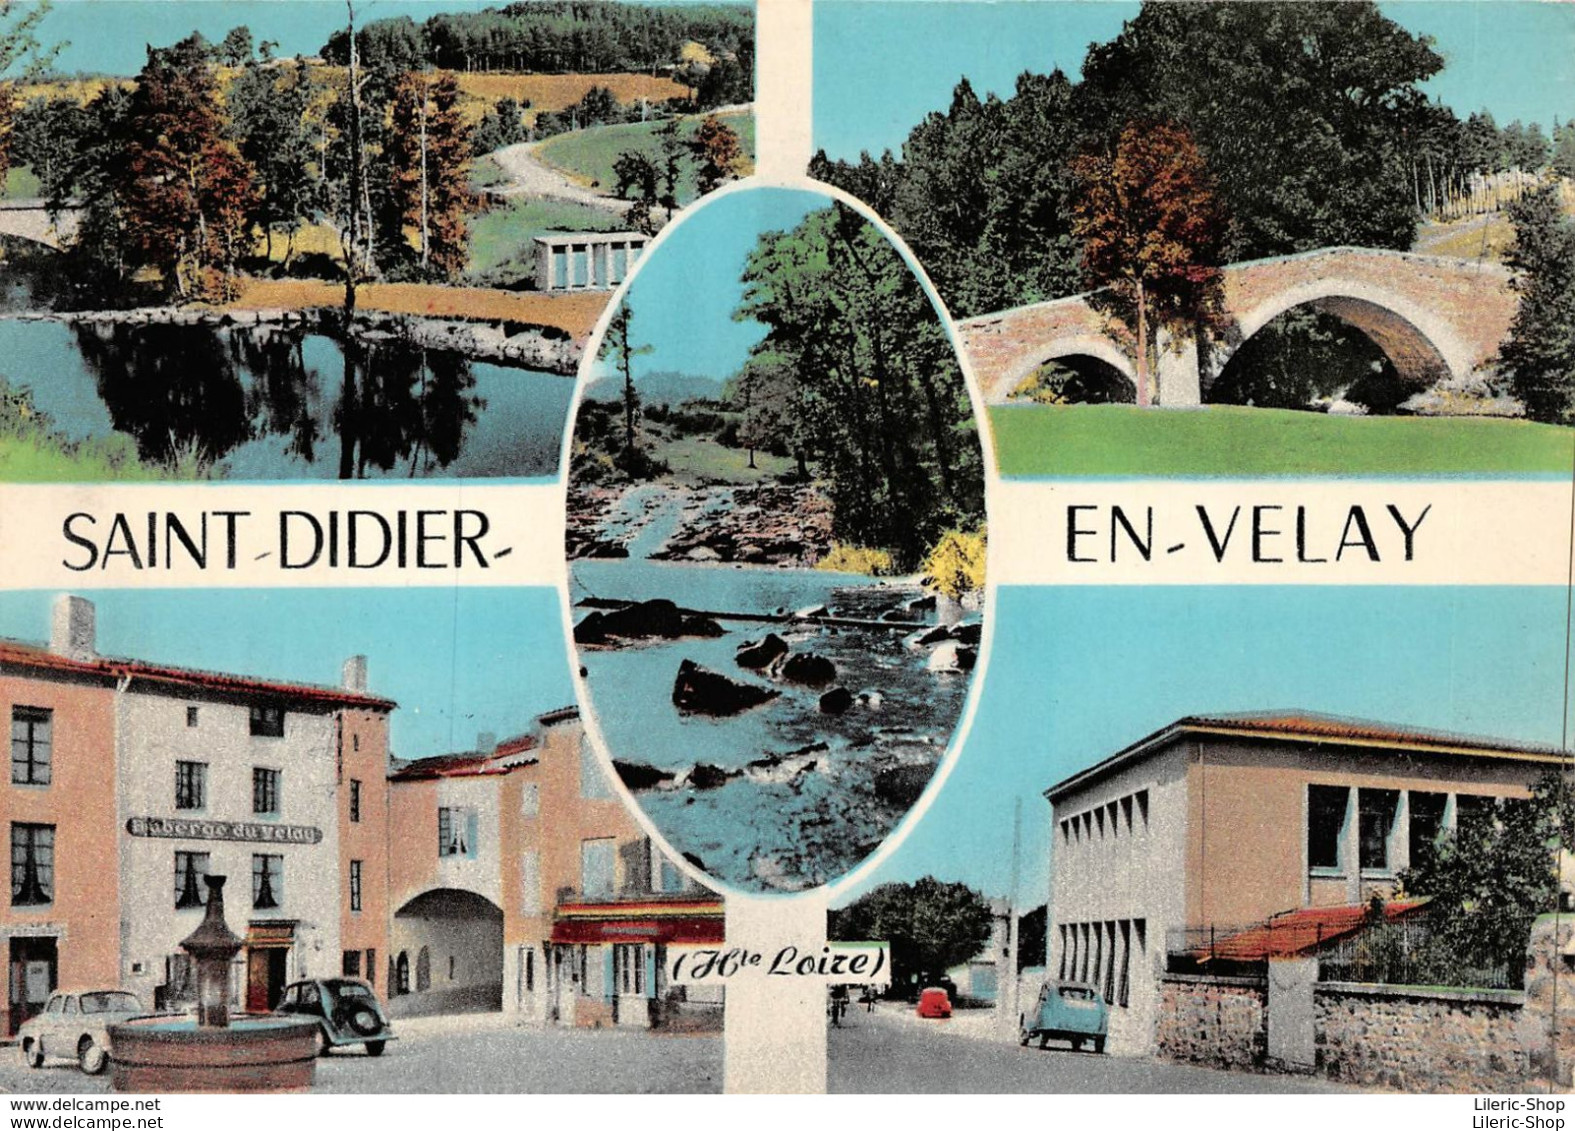 SAINT-DIDIER-en-VELAY (43) 1961-67- Multi Vues - Auberge Du Velay - Automobiles Dauphine - 2 CV - Éd. COMBIER - Saint Didier En Velay